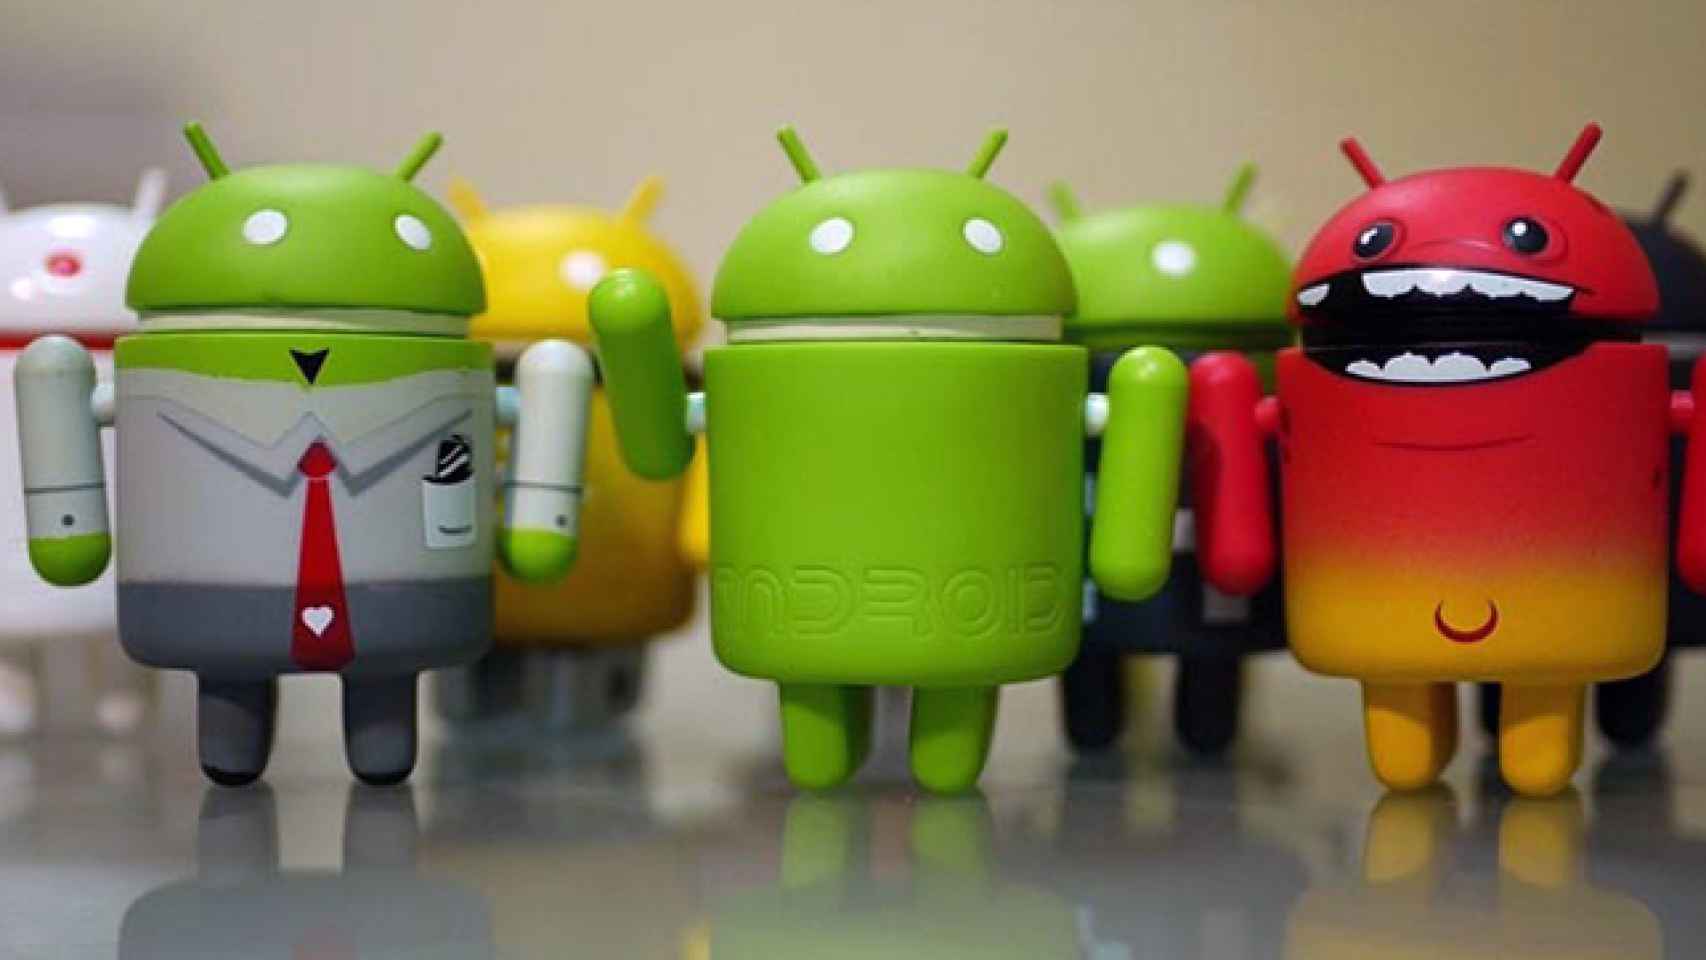 La fragmentación y diversidad de Android en una imagen